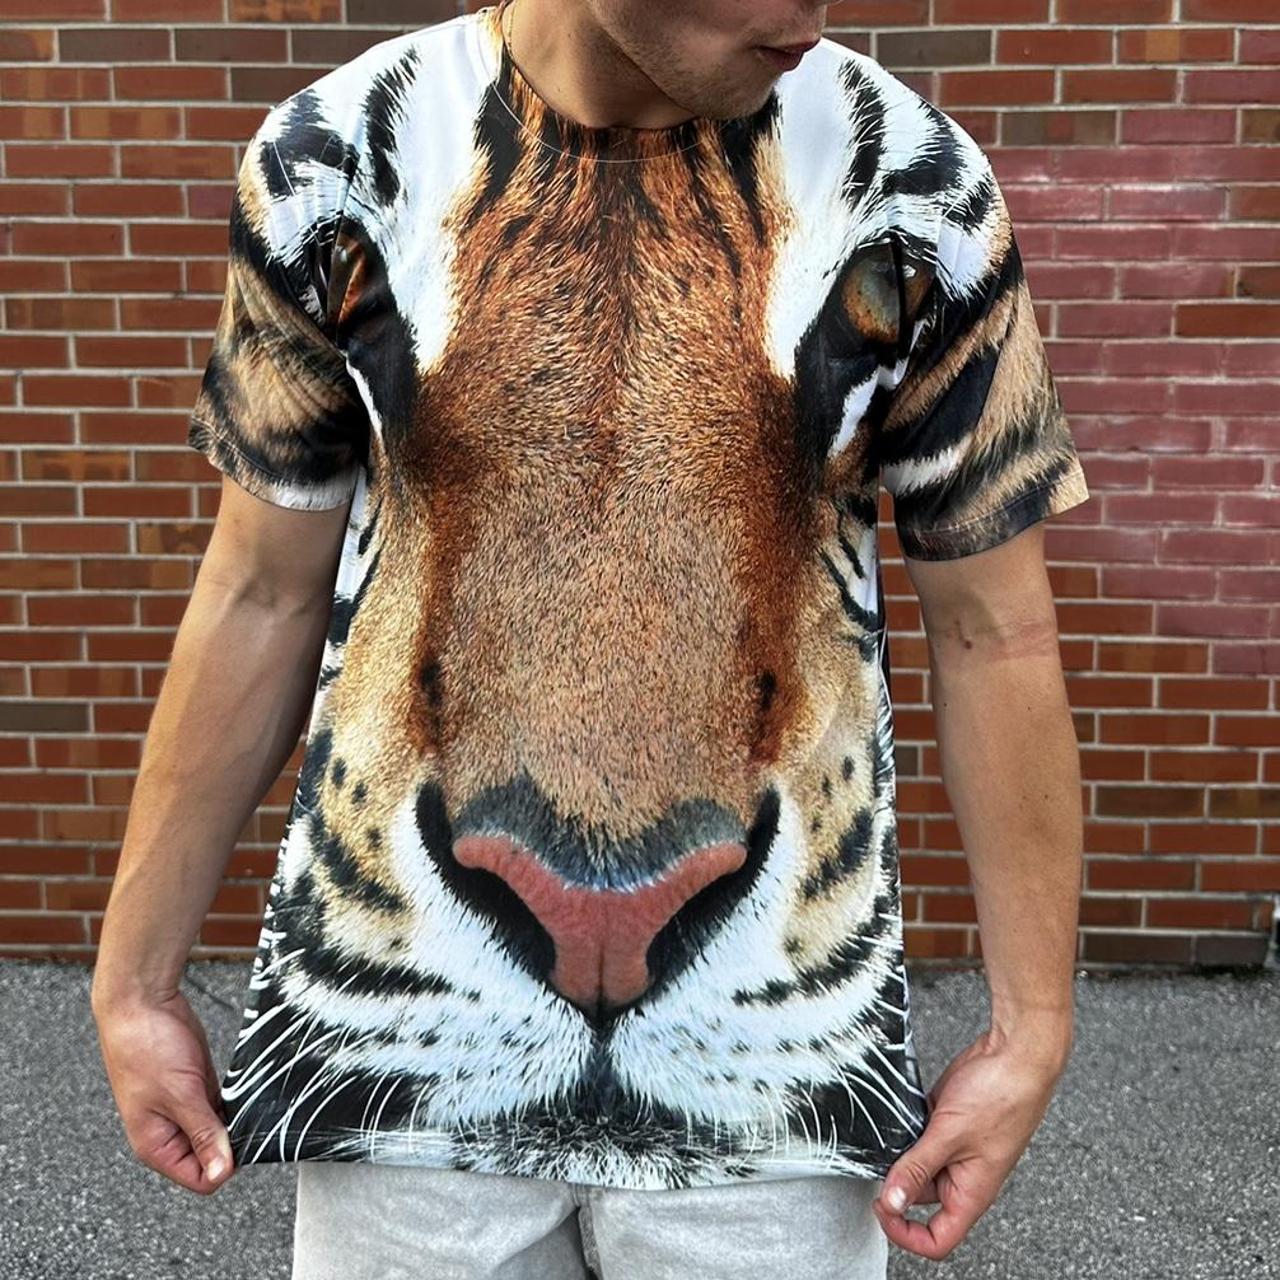 3D Tiger T Shirt | Tiger-Universe